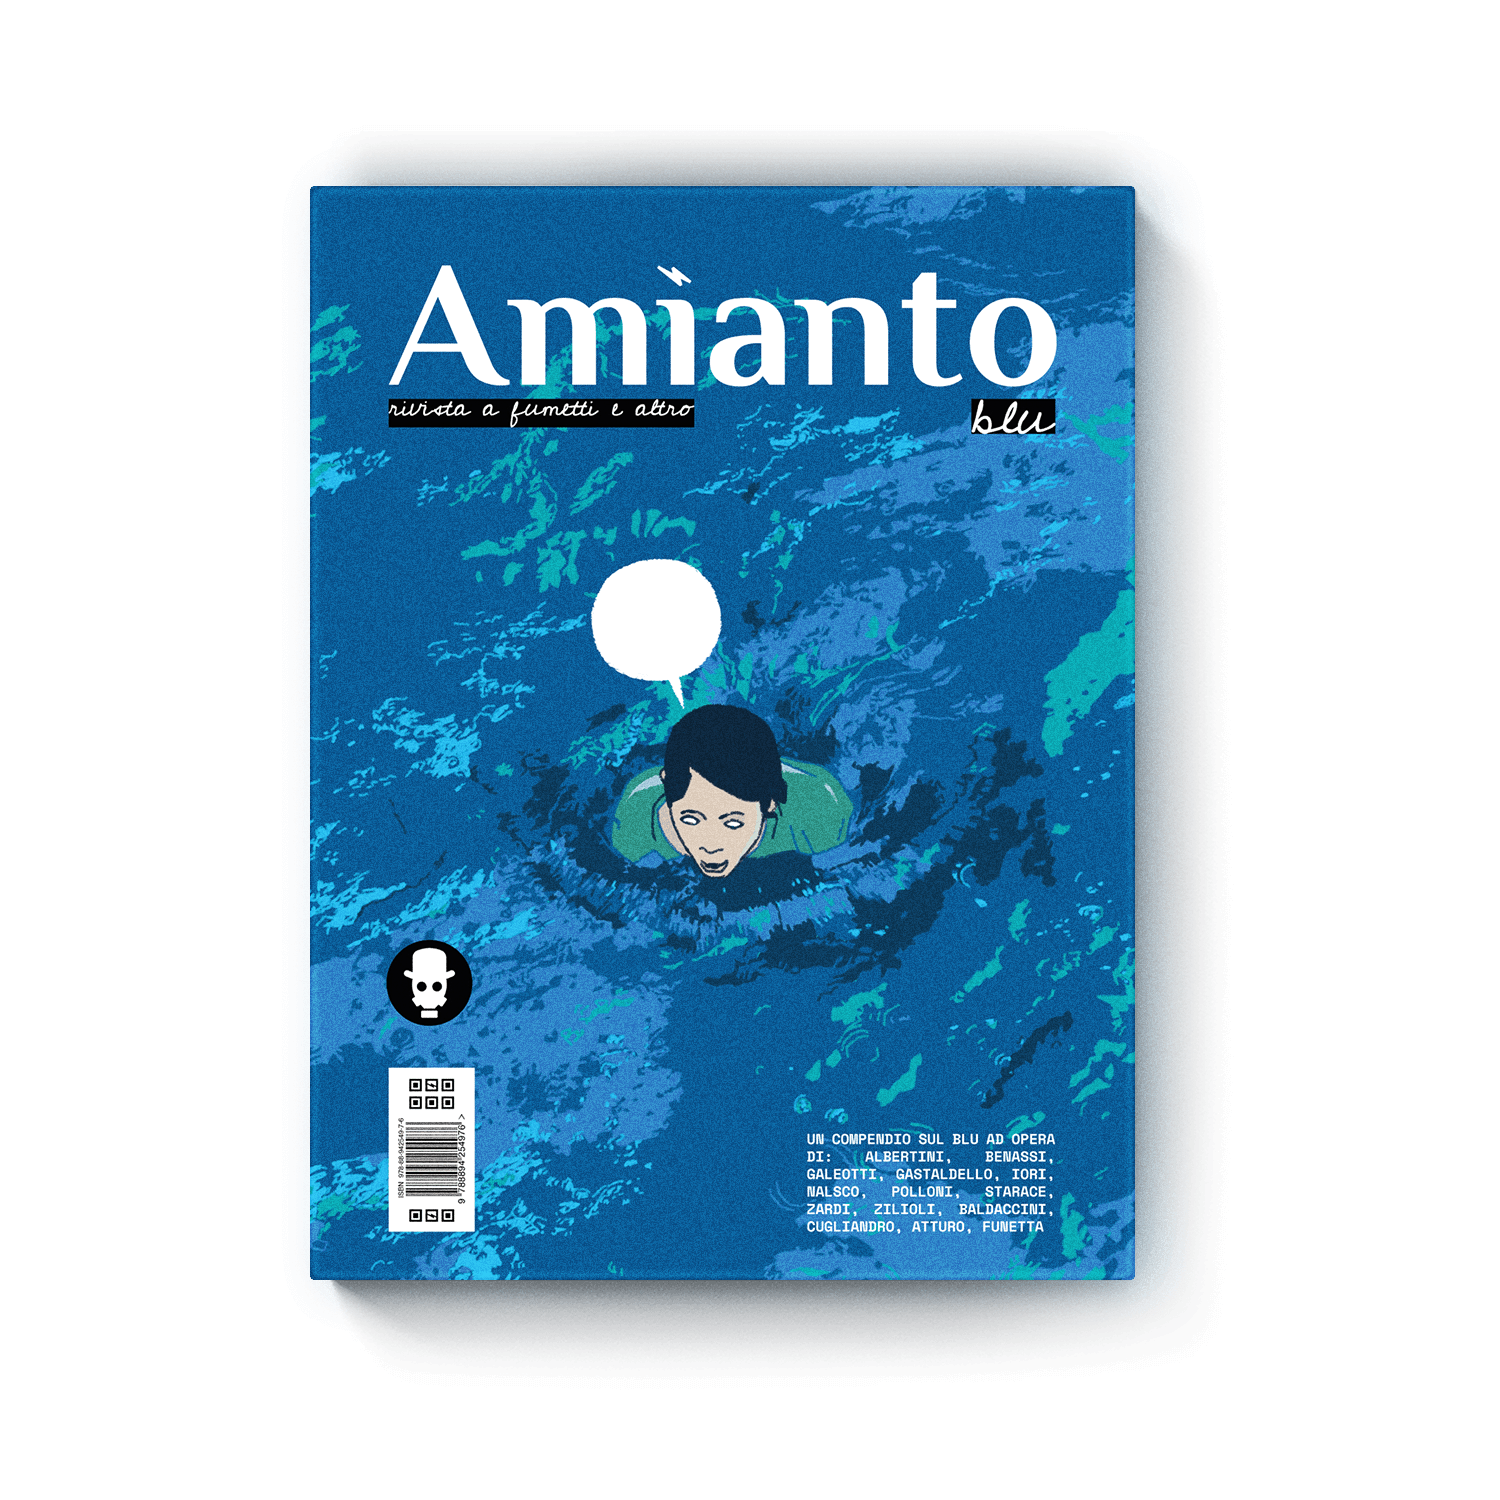 Amianto blu